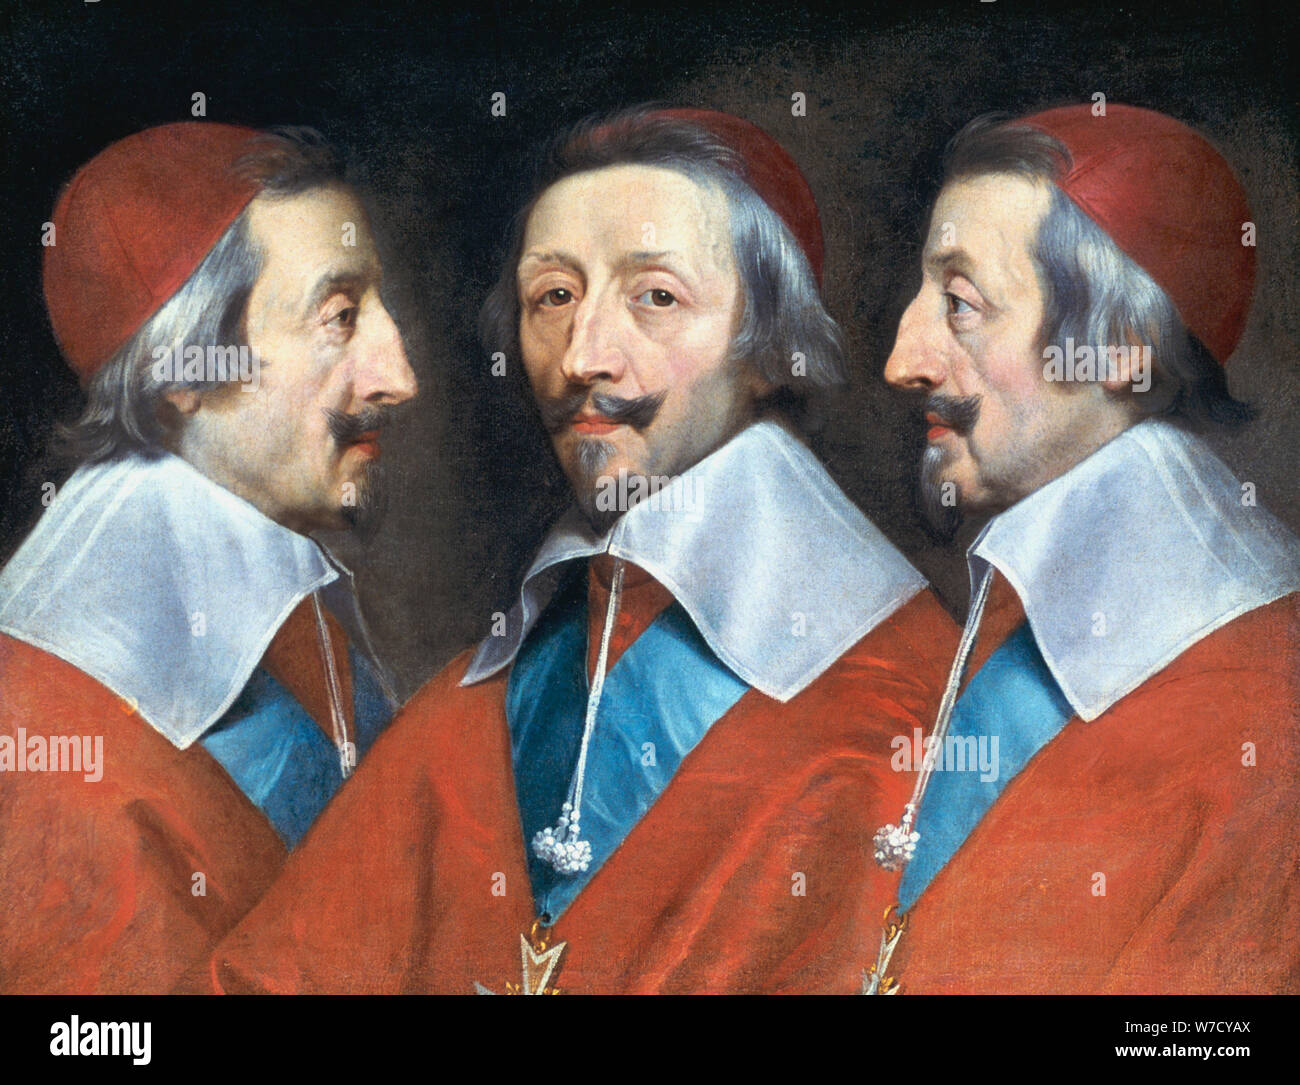 Il cardinale Richelieu, prelato francese e statista, c1642. Artista: Philippe de Champaigne Foto Stock